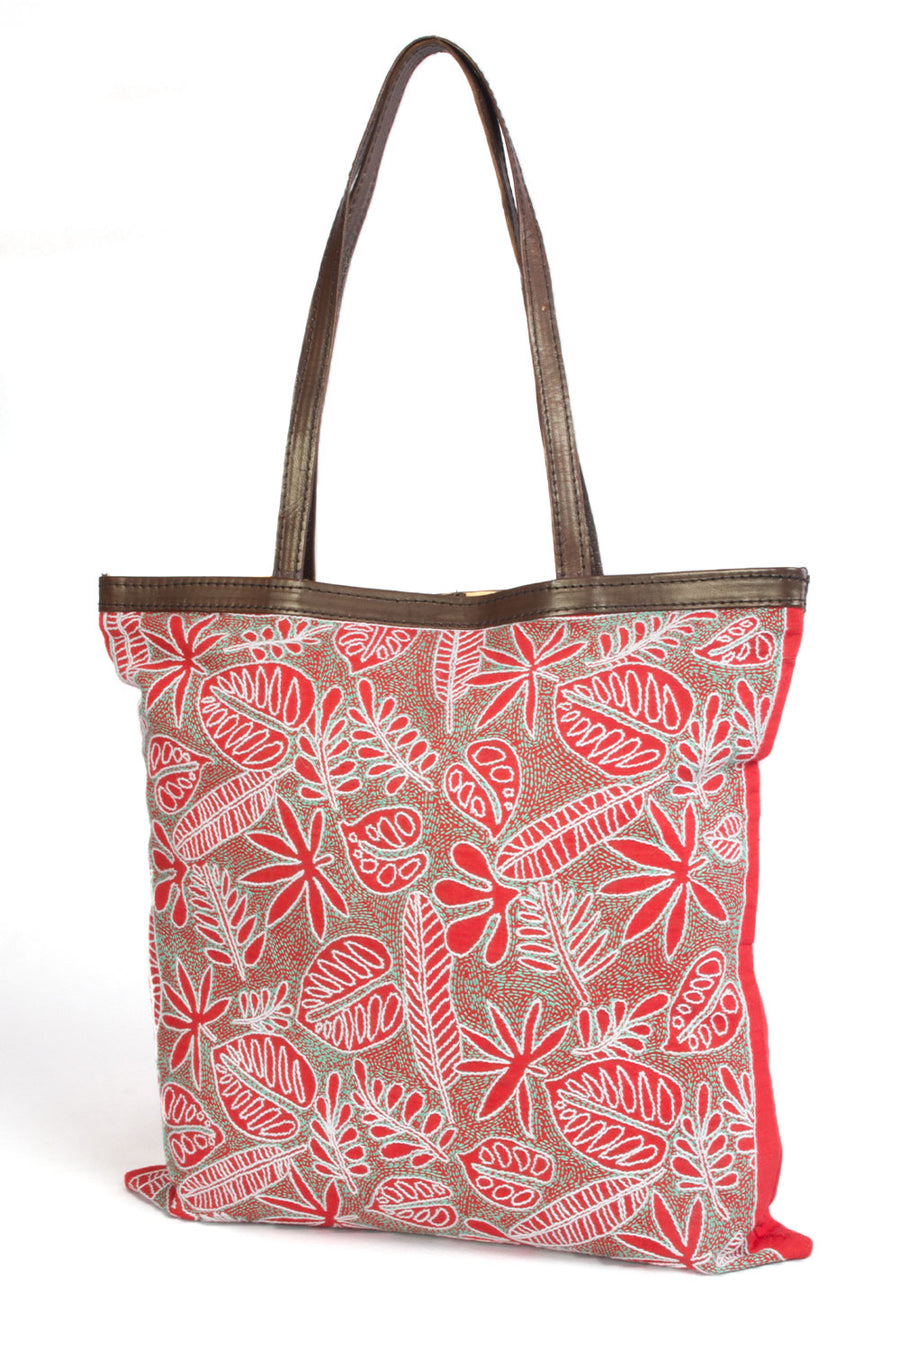 Red Kantha Embroidery Tote Bag - Avishya